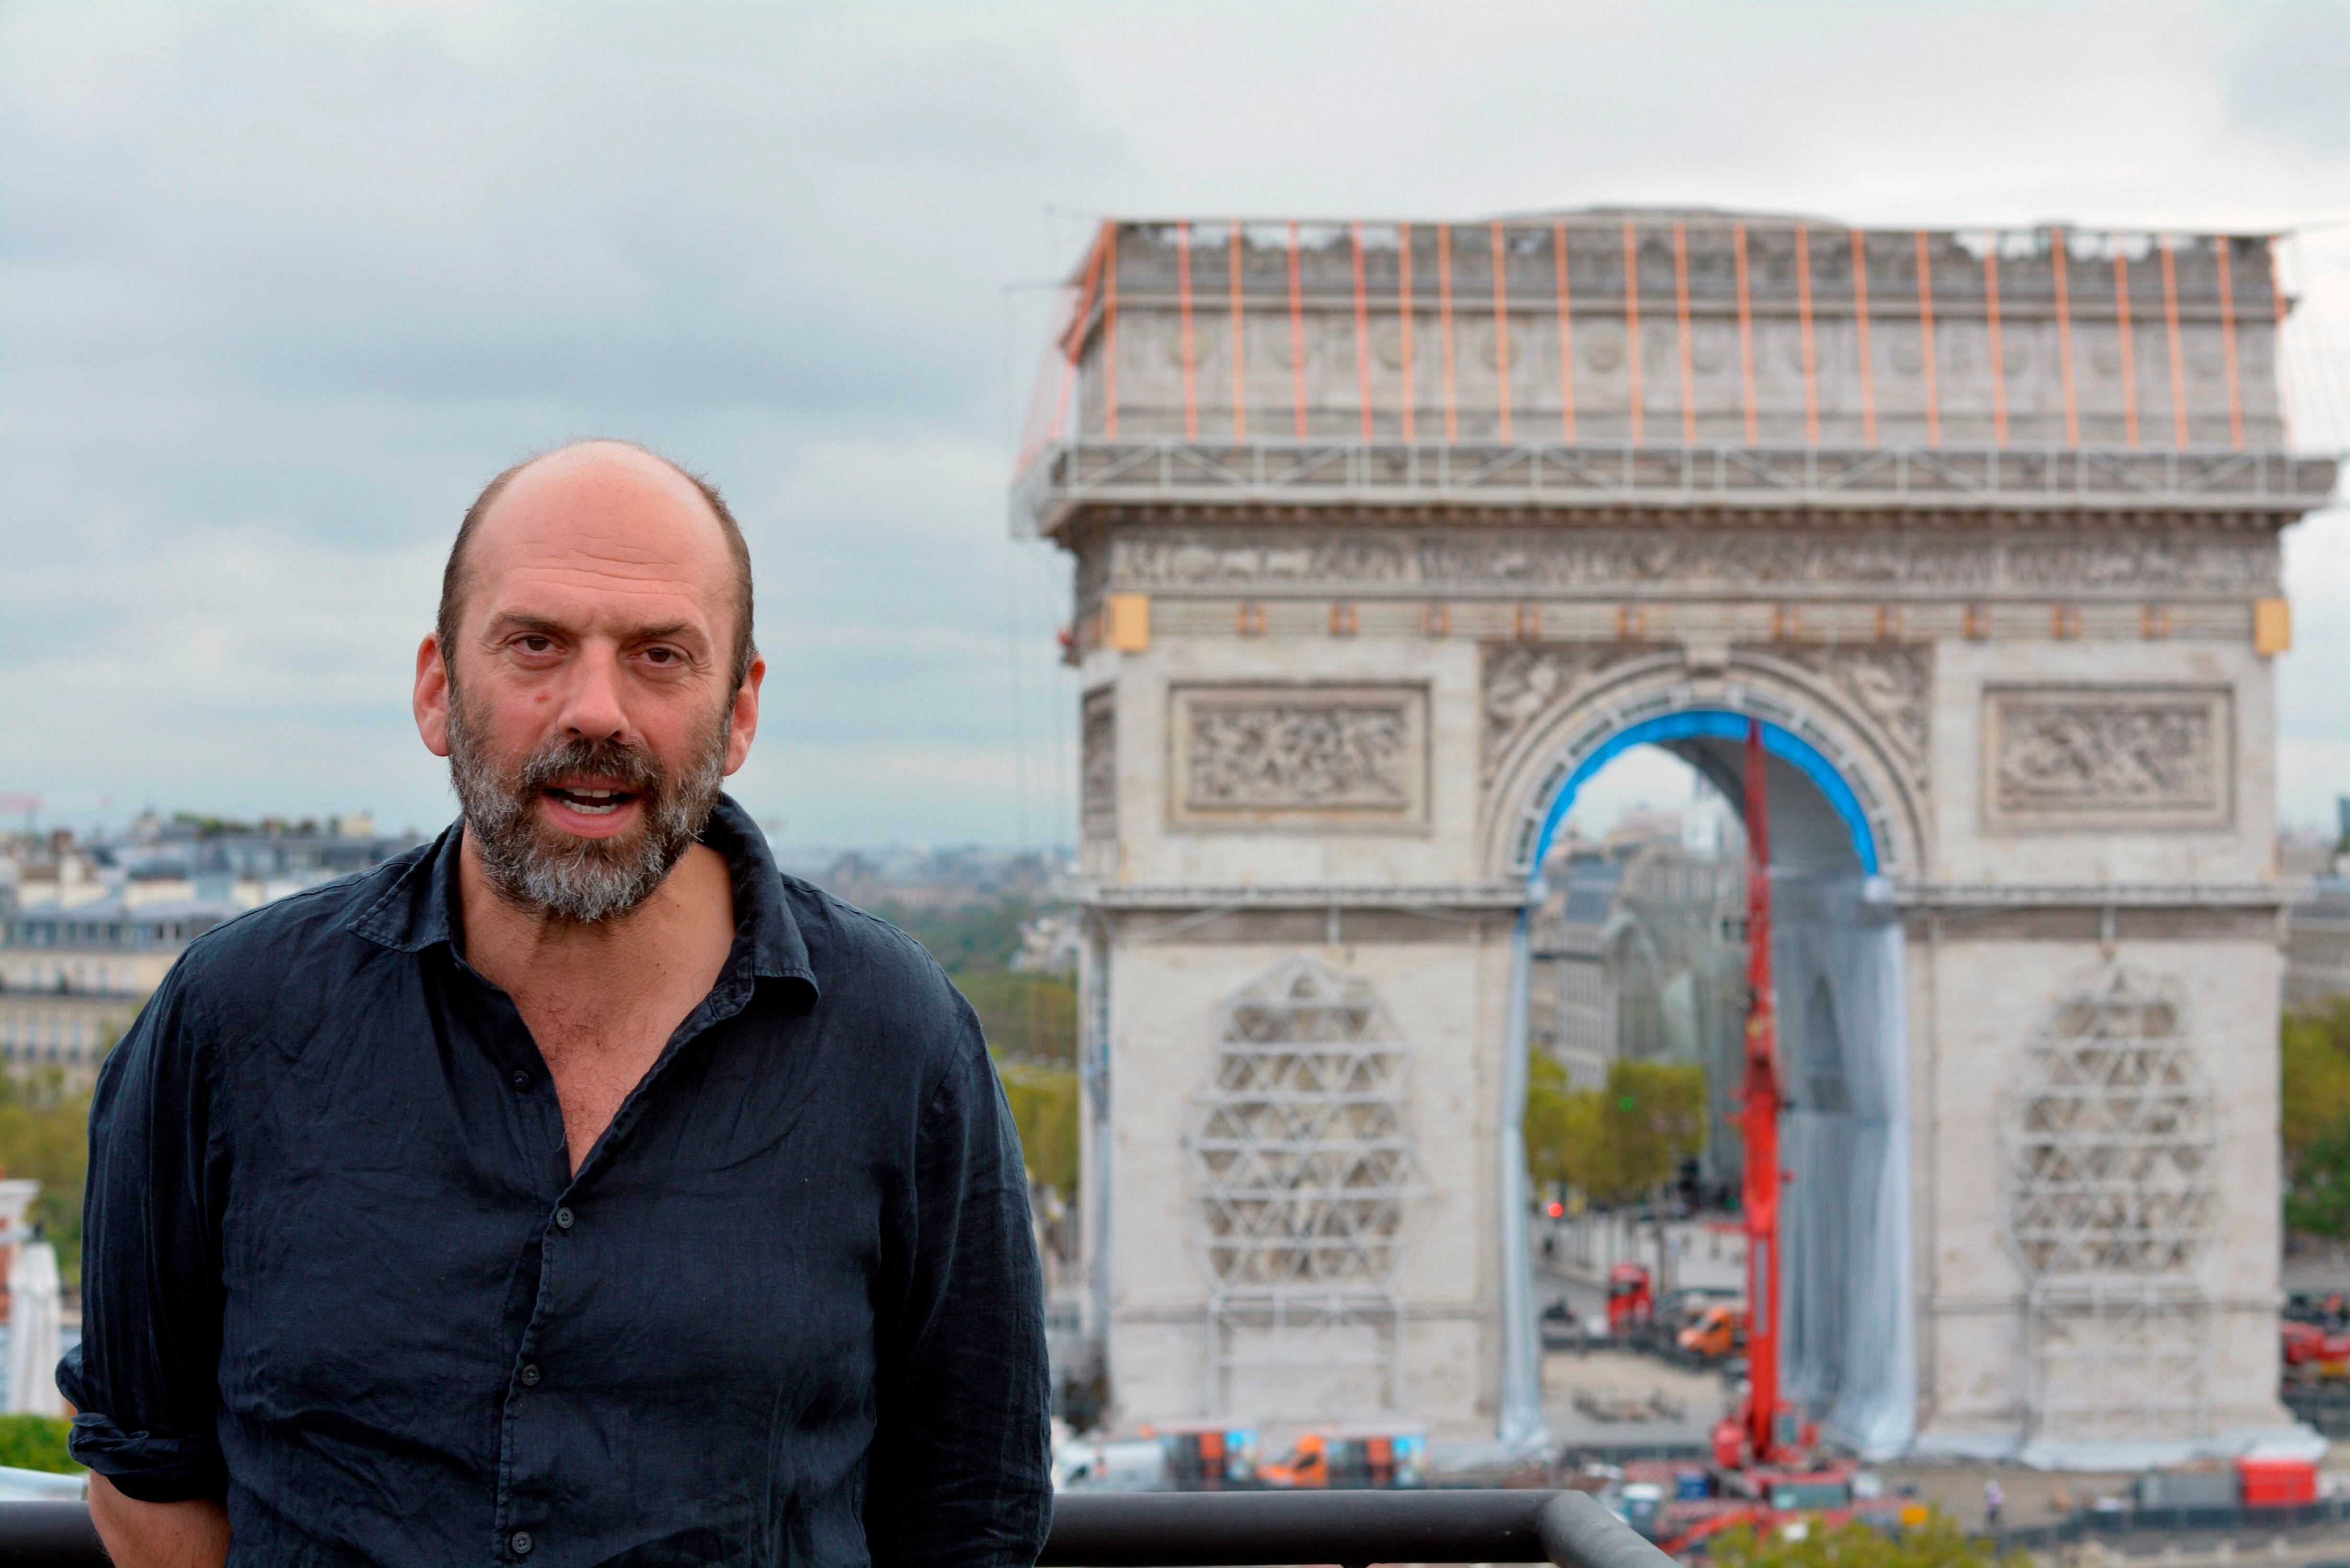 El sobrino del artista Christo, Vladimir Yavachev junto al Arco de Triunfo de París durante las obras del proyecto "L'Arc de Triomphe empaqueté", del artista búlgaro Christo, fallecido en 2020, que se está realizando de forma póstuma. EFE/ Rafa Cañas
